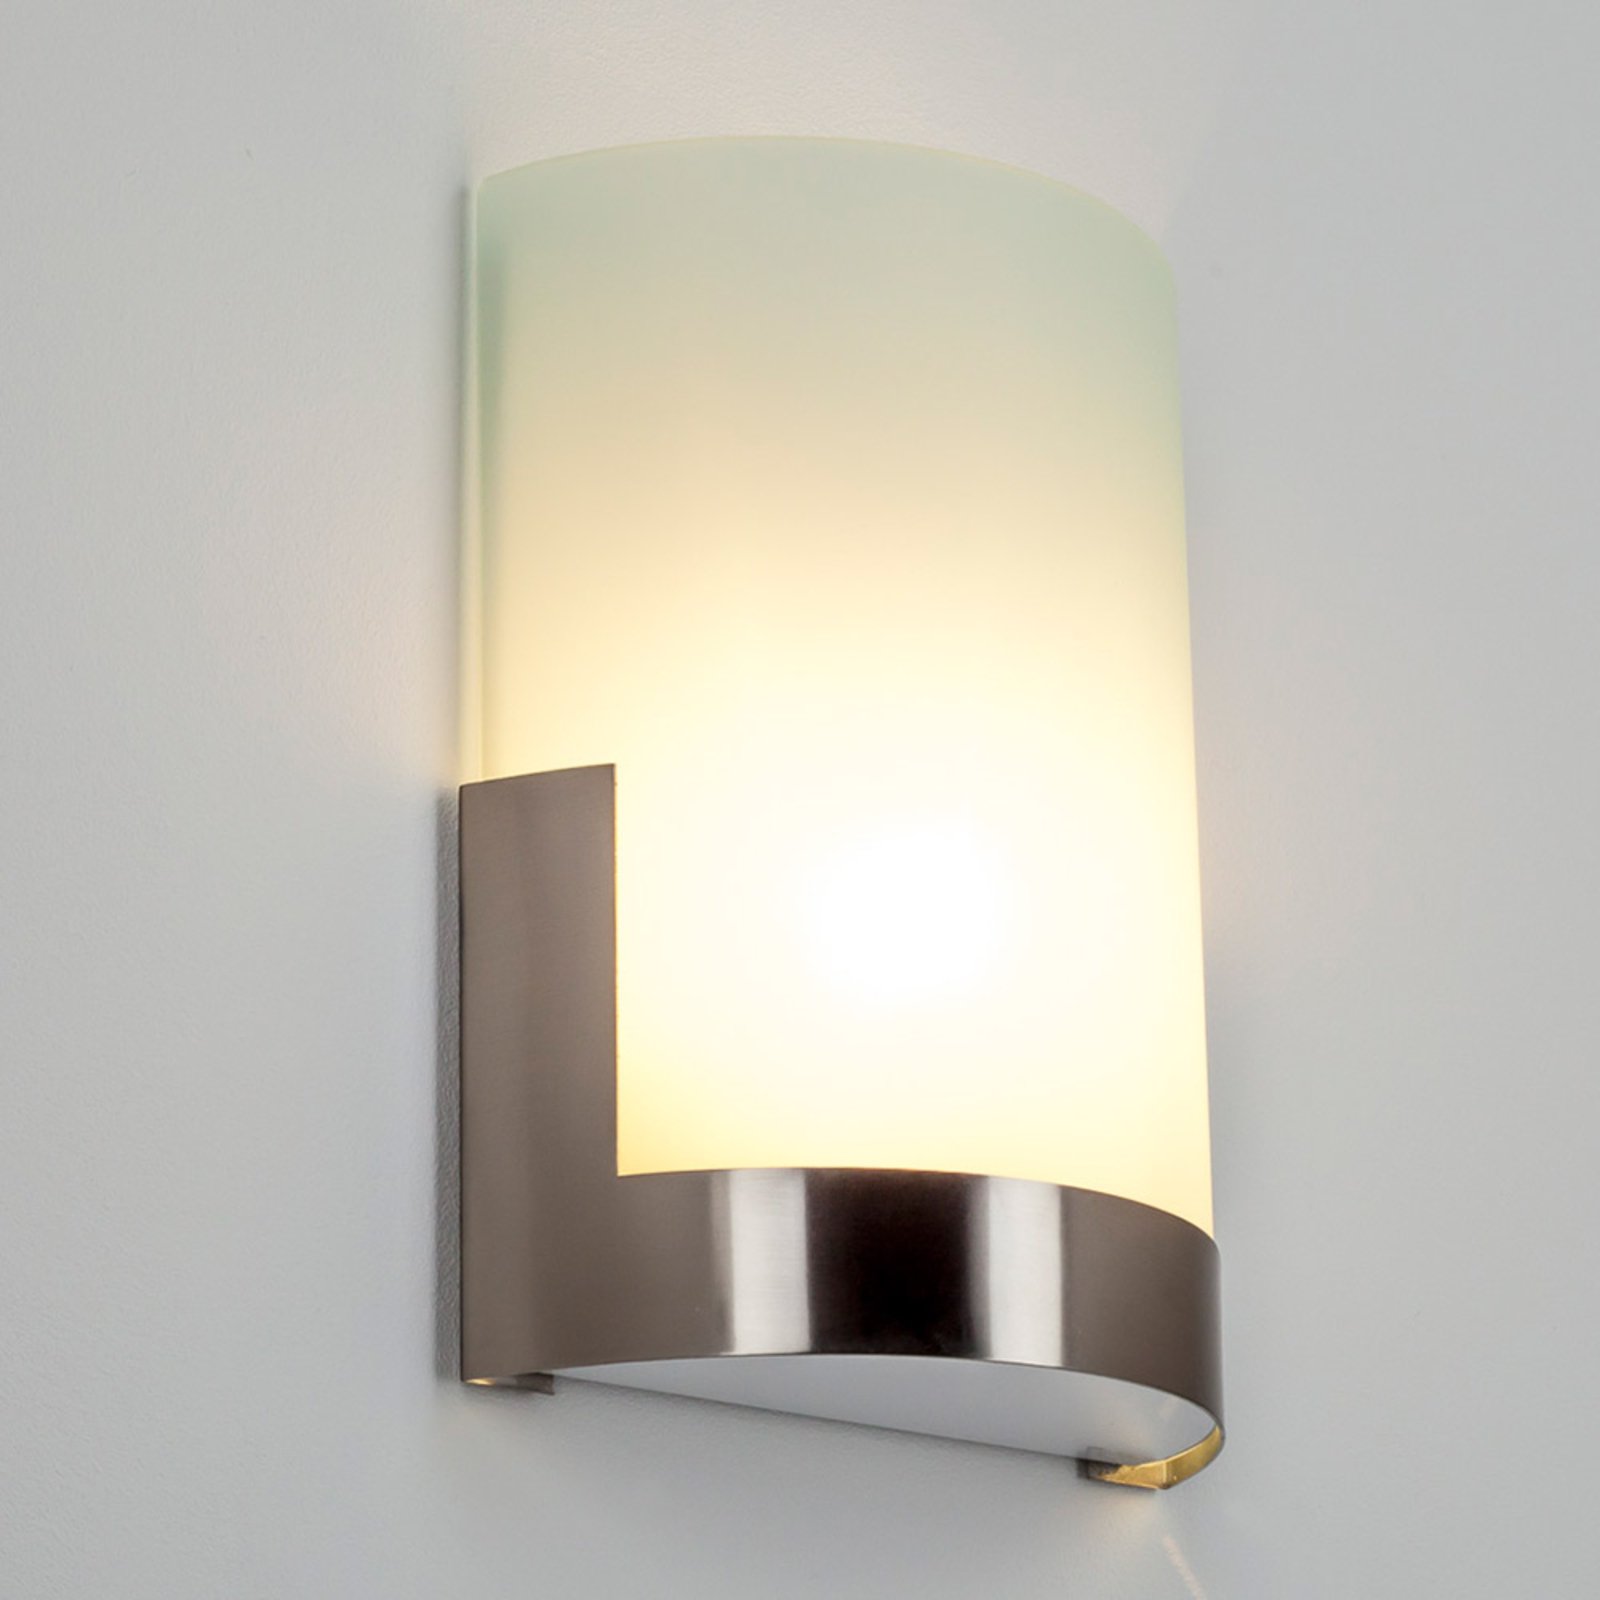 Modieuze wandlamp Karla met metalen element